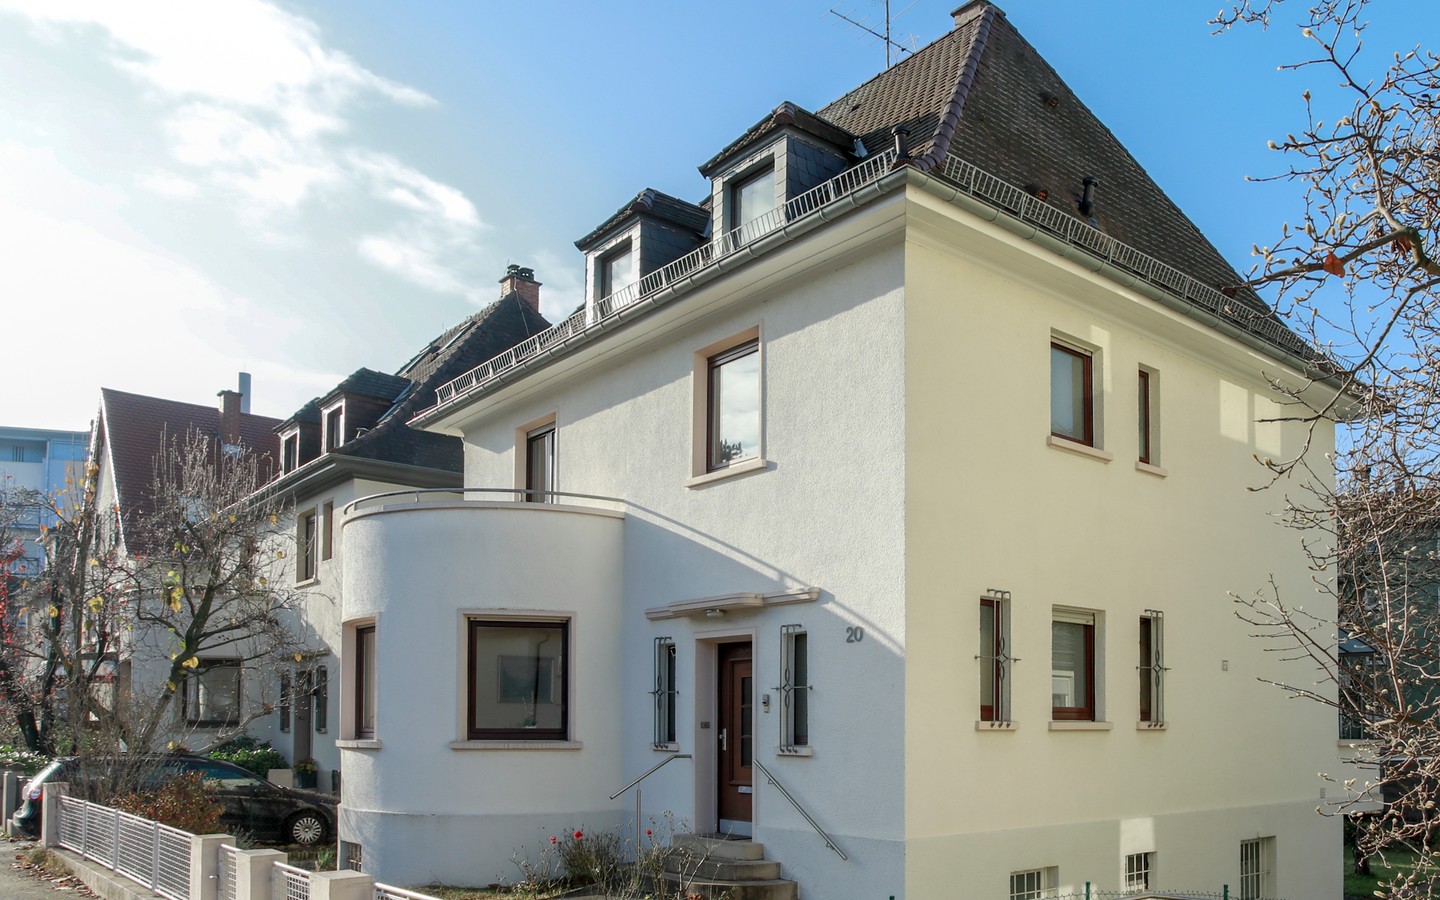 Hausansicht  - Rarität: Freistehendes Einfamilienhaus auf ca. 700qm großem Grundstück in der Heidelberger Weststadt